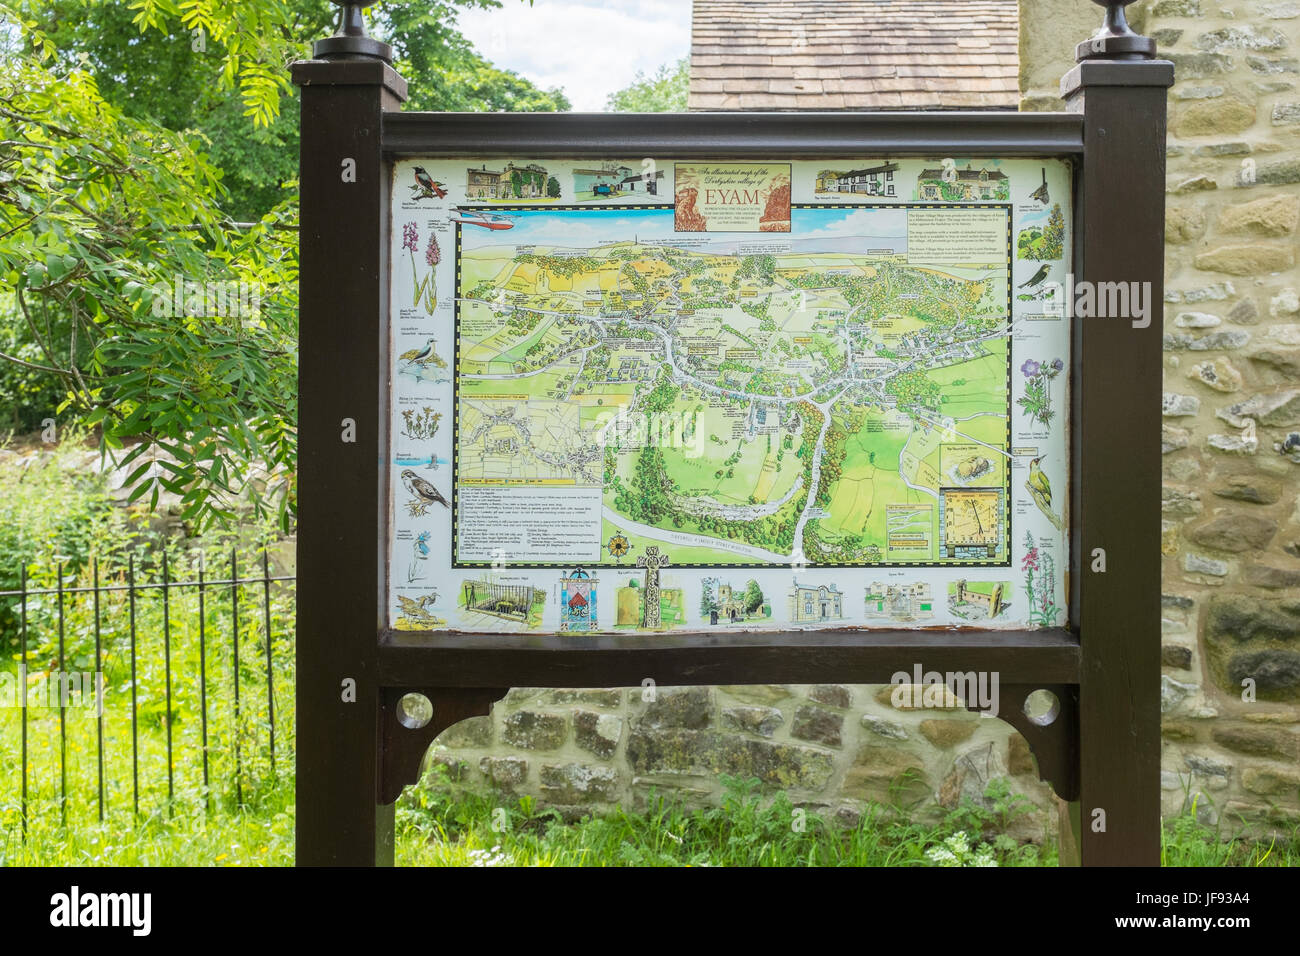 Illustrierte Karte von Eyam in Derbyshire Peak District außerhalb der Tourist Information Centre Stockfoto